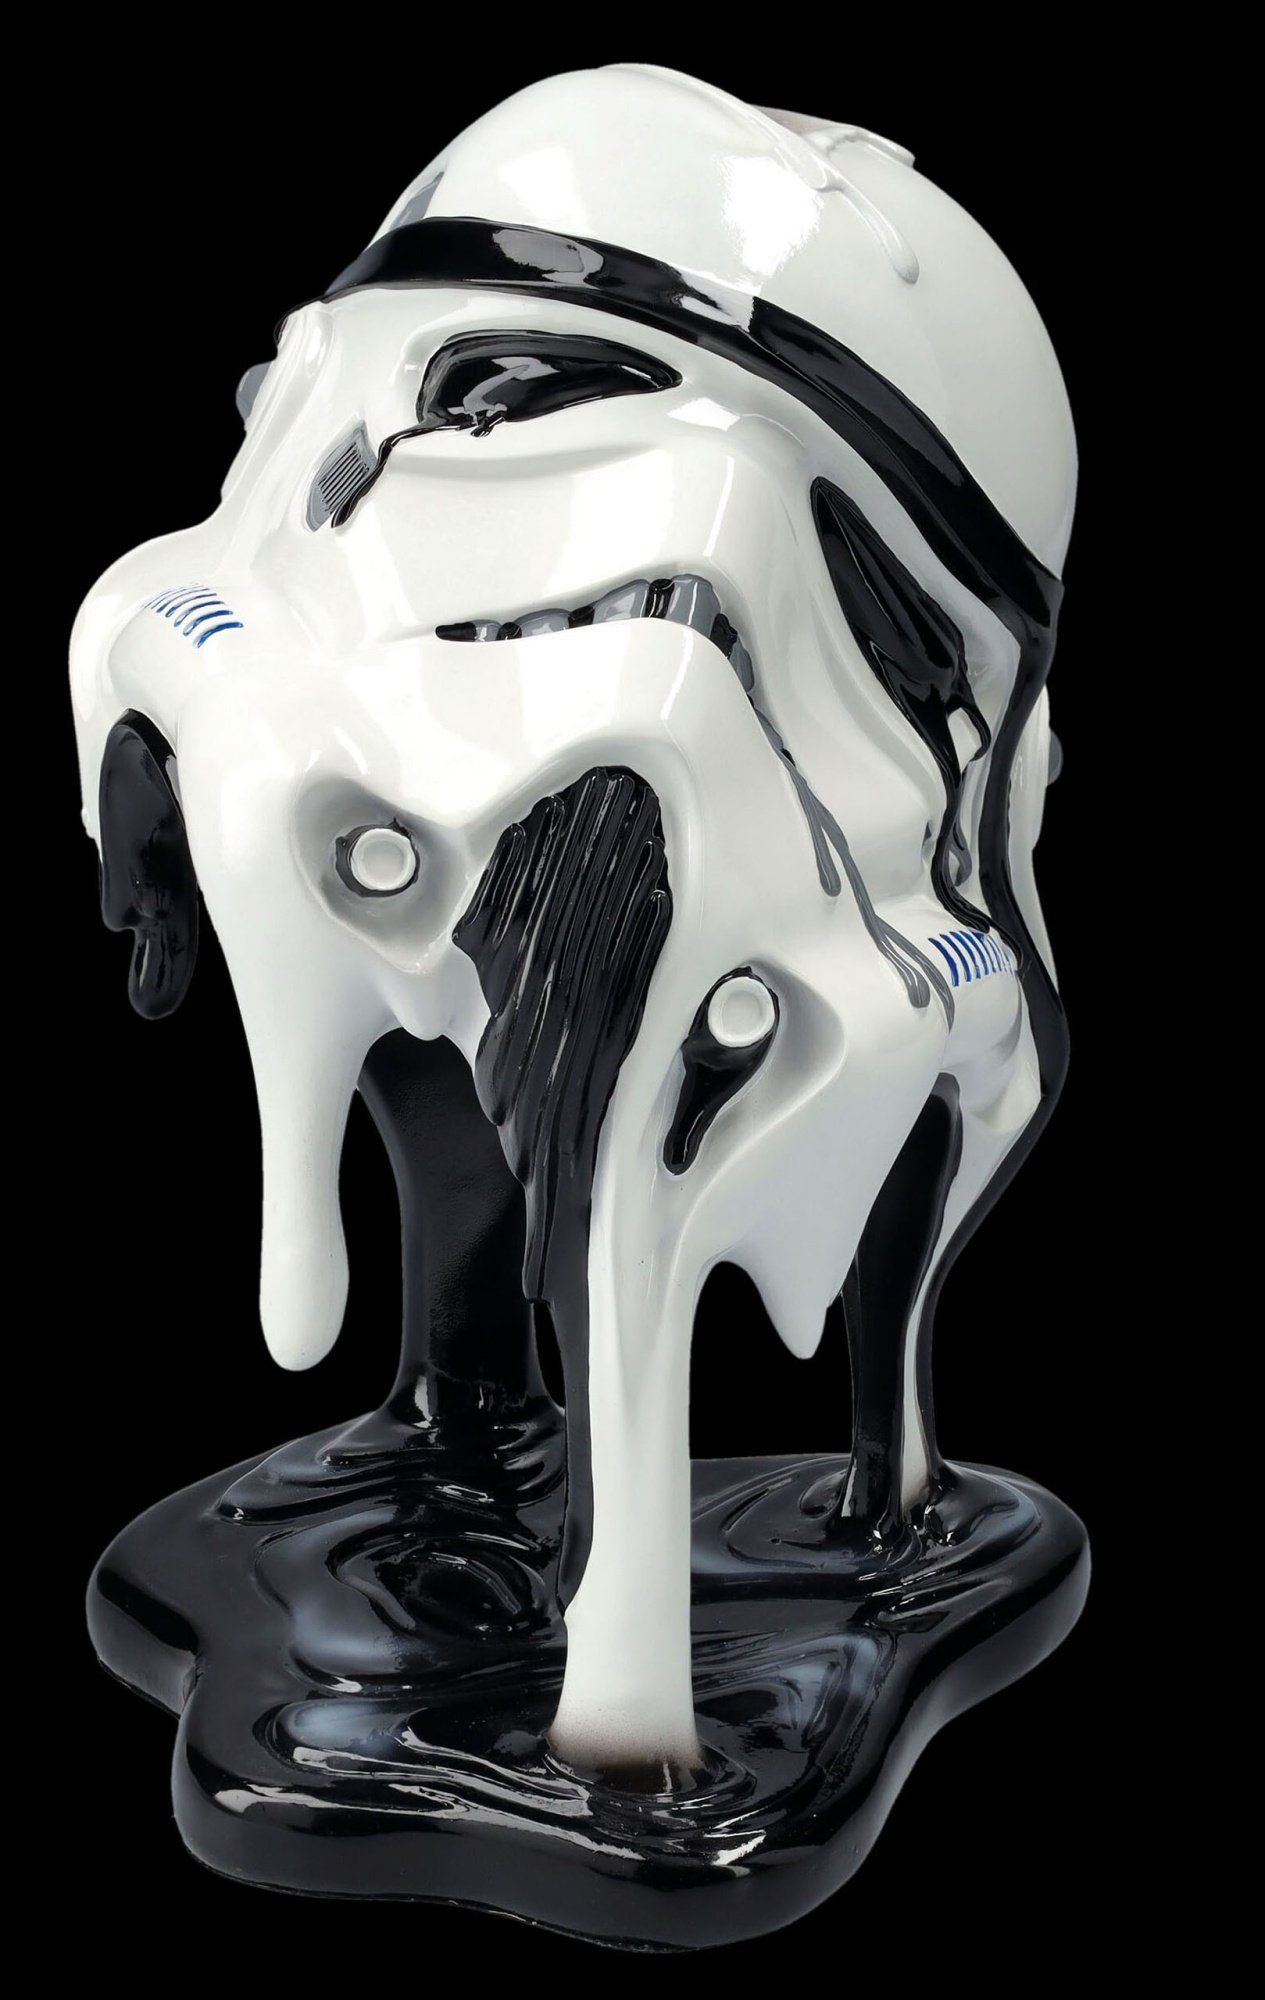 To Dekoobjekt GmbH Too Helm Stormtrooper Sci-Fi Shop Figuren - Hot Handle - Merchandise Dekoration